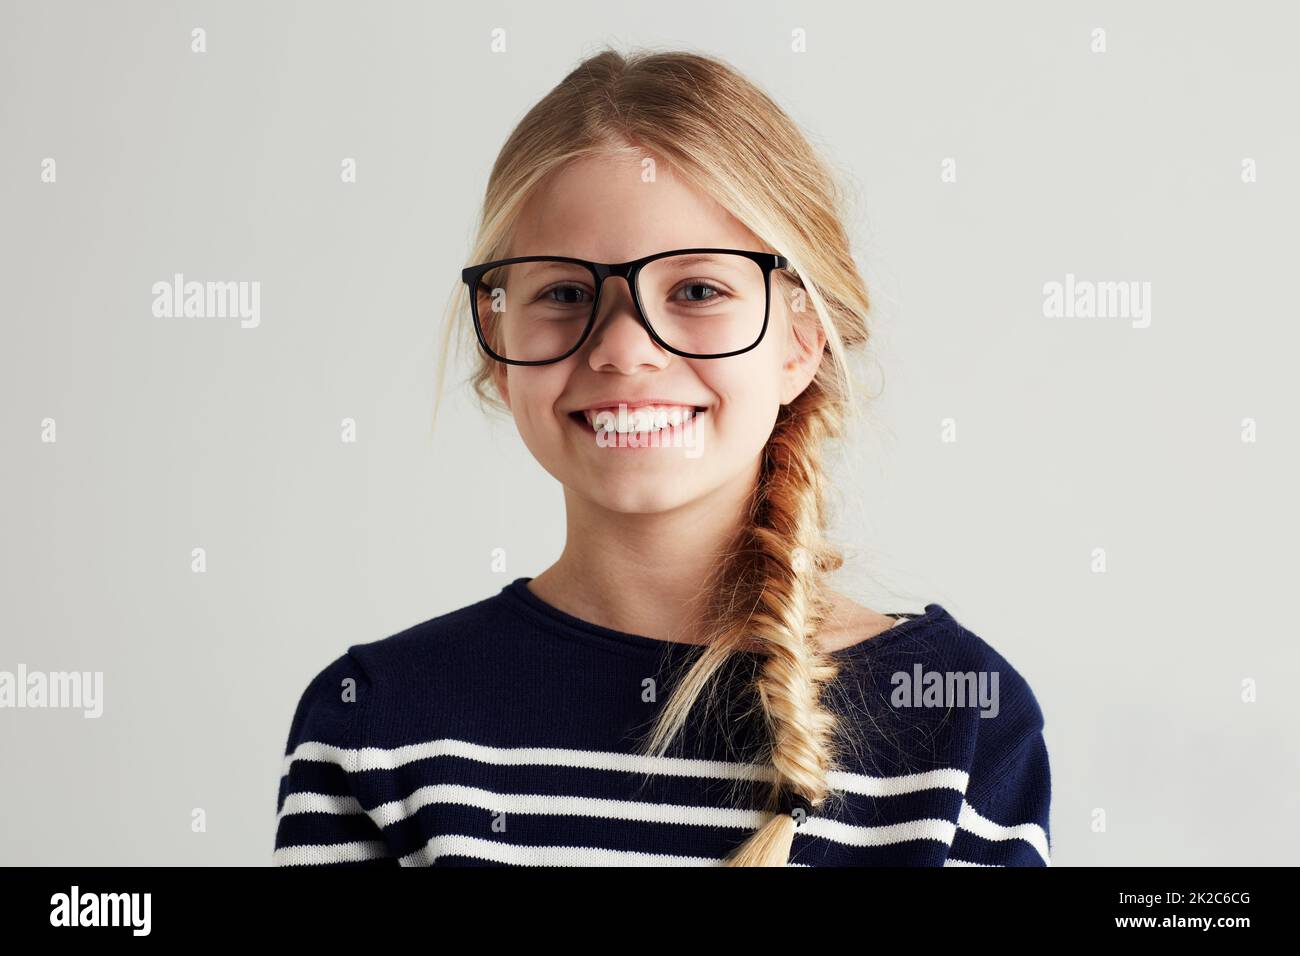 Shes hat eine glänzende Zukunft vor sich. Portrait eines niedlichen Mädchens, das dir ein toothy Lächeln gibt, während du eine Hipster-Brille trägst. Stockfoto